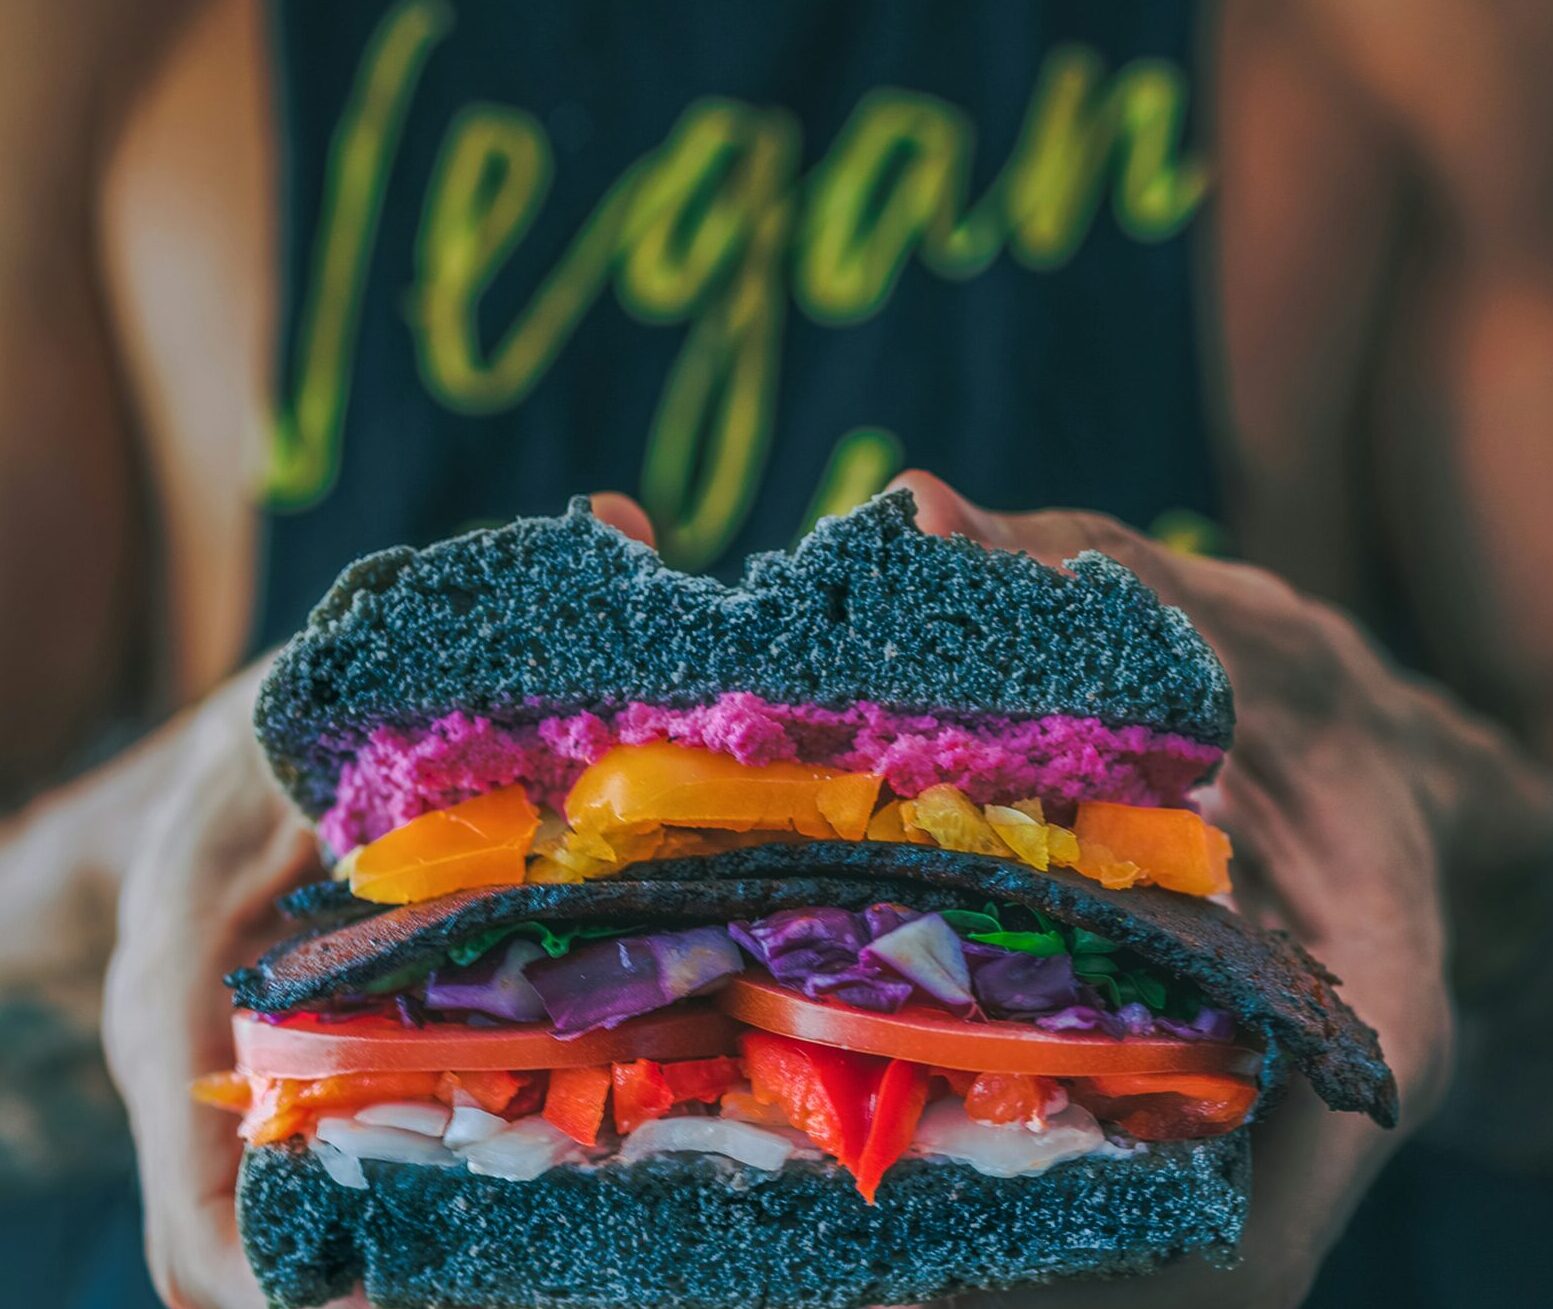 vegan shirt and burger